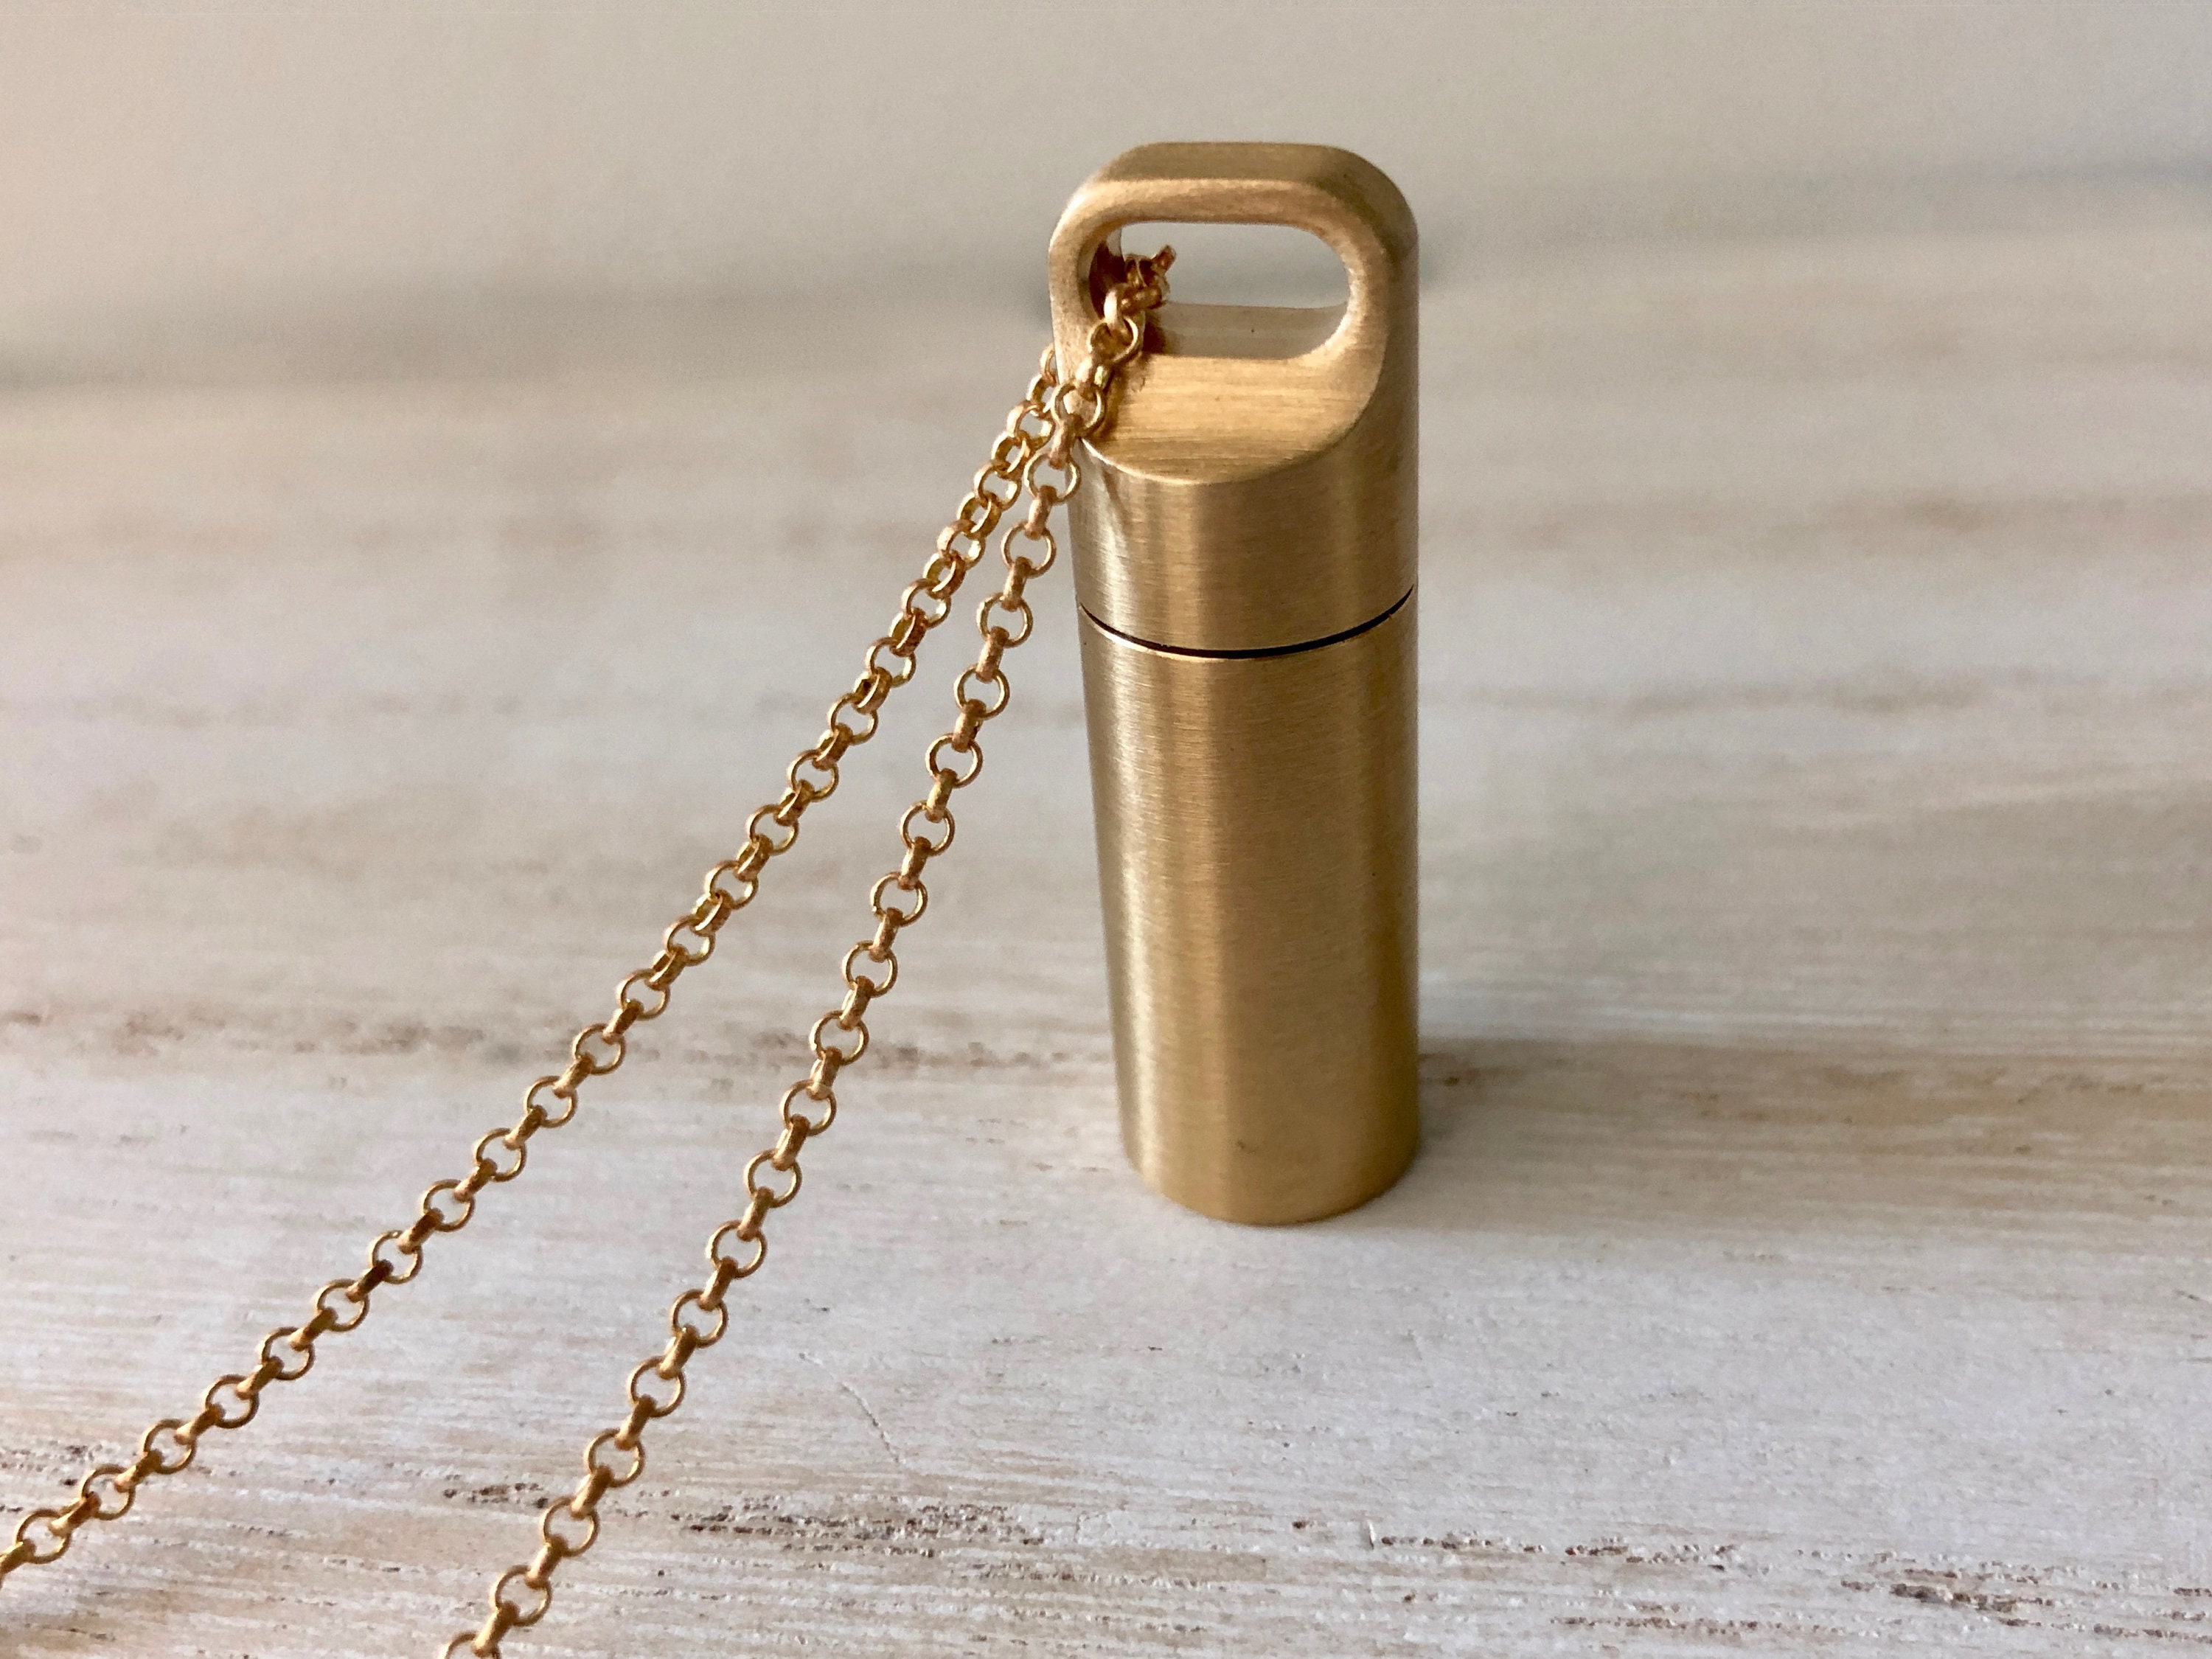 Vial Stash Necklace Pendant Secret Cylinder Urn Pill Hidden Steel